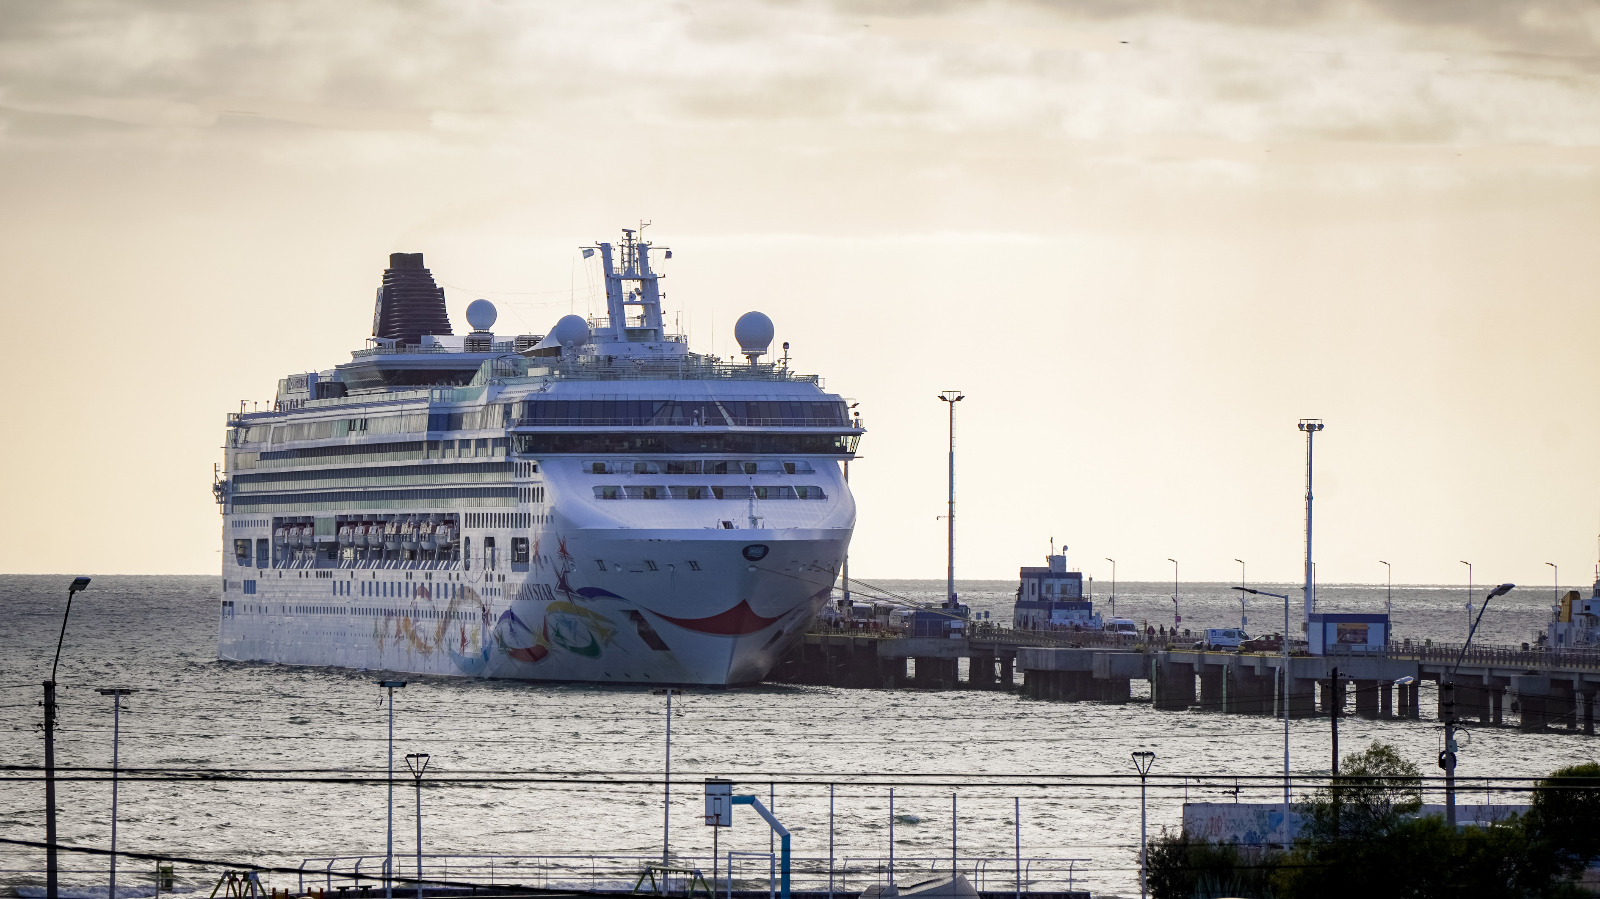 Temporada de cruceros en Puerto Madryn: El Norwegian Star arribó nuevamente a la ciudad